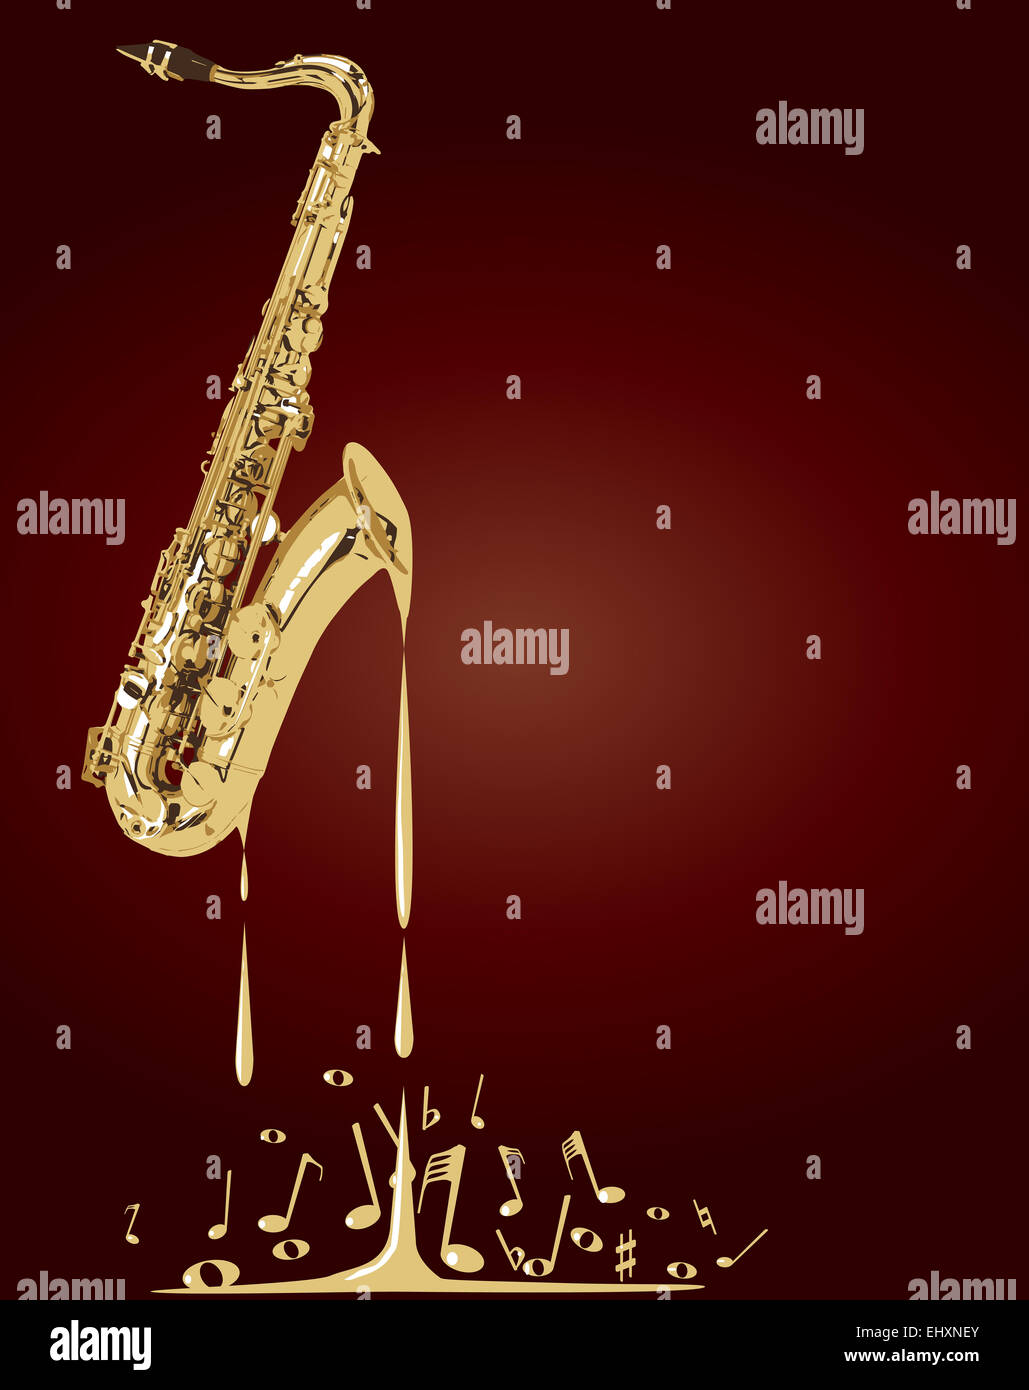 Un saxophone fondre dans des notes de musique sur un fond rouge Banque D'Images